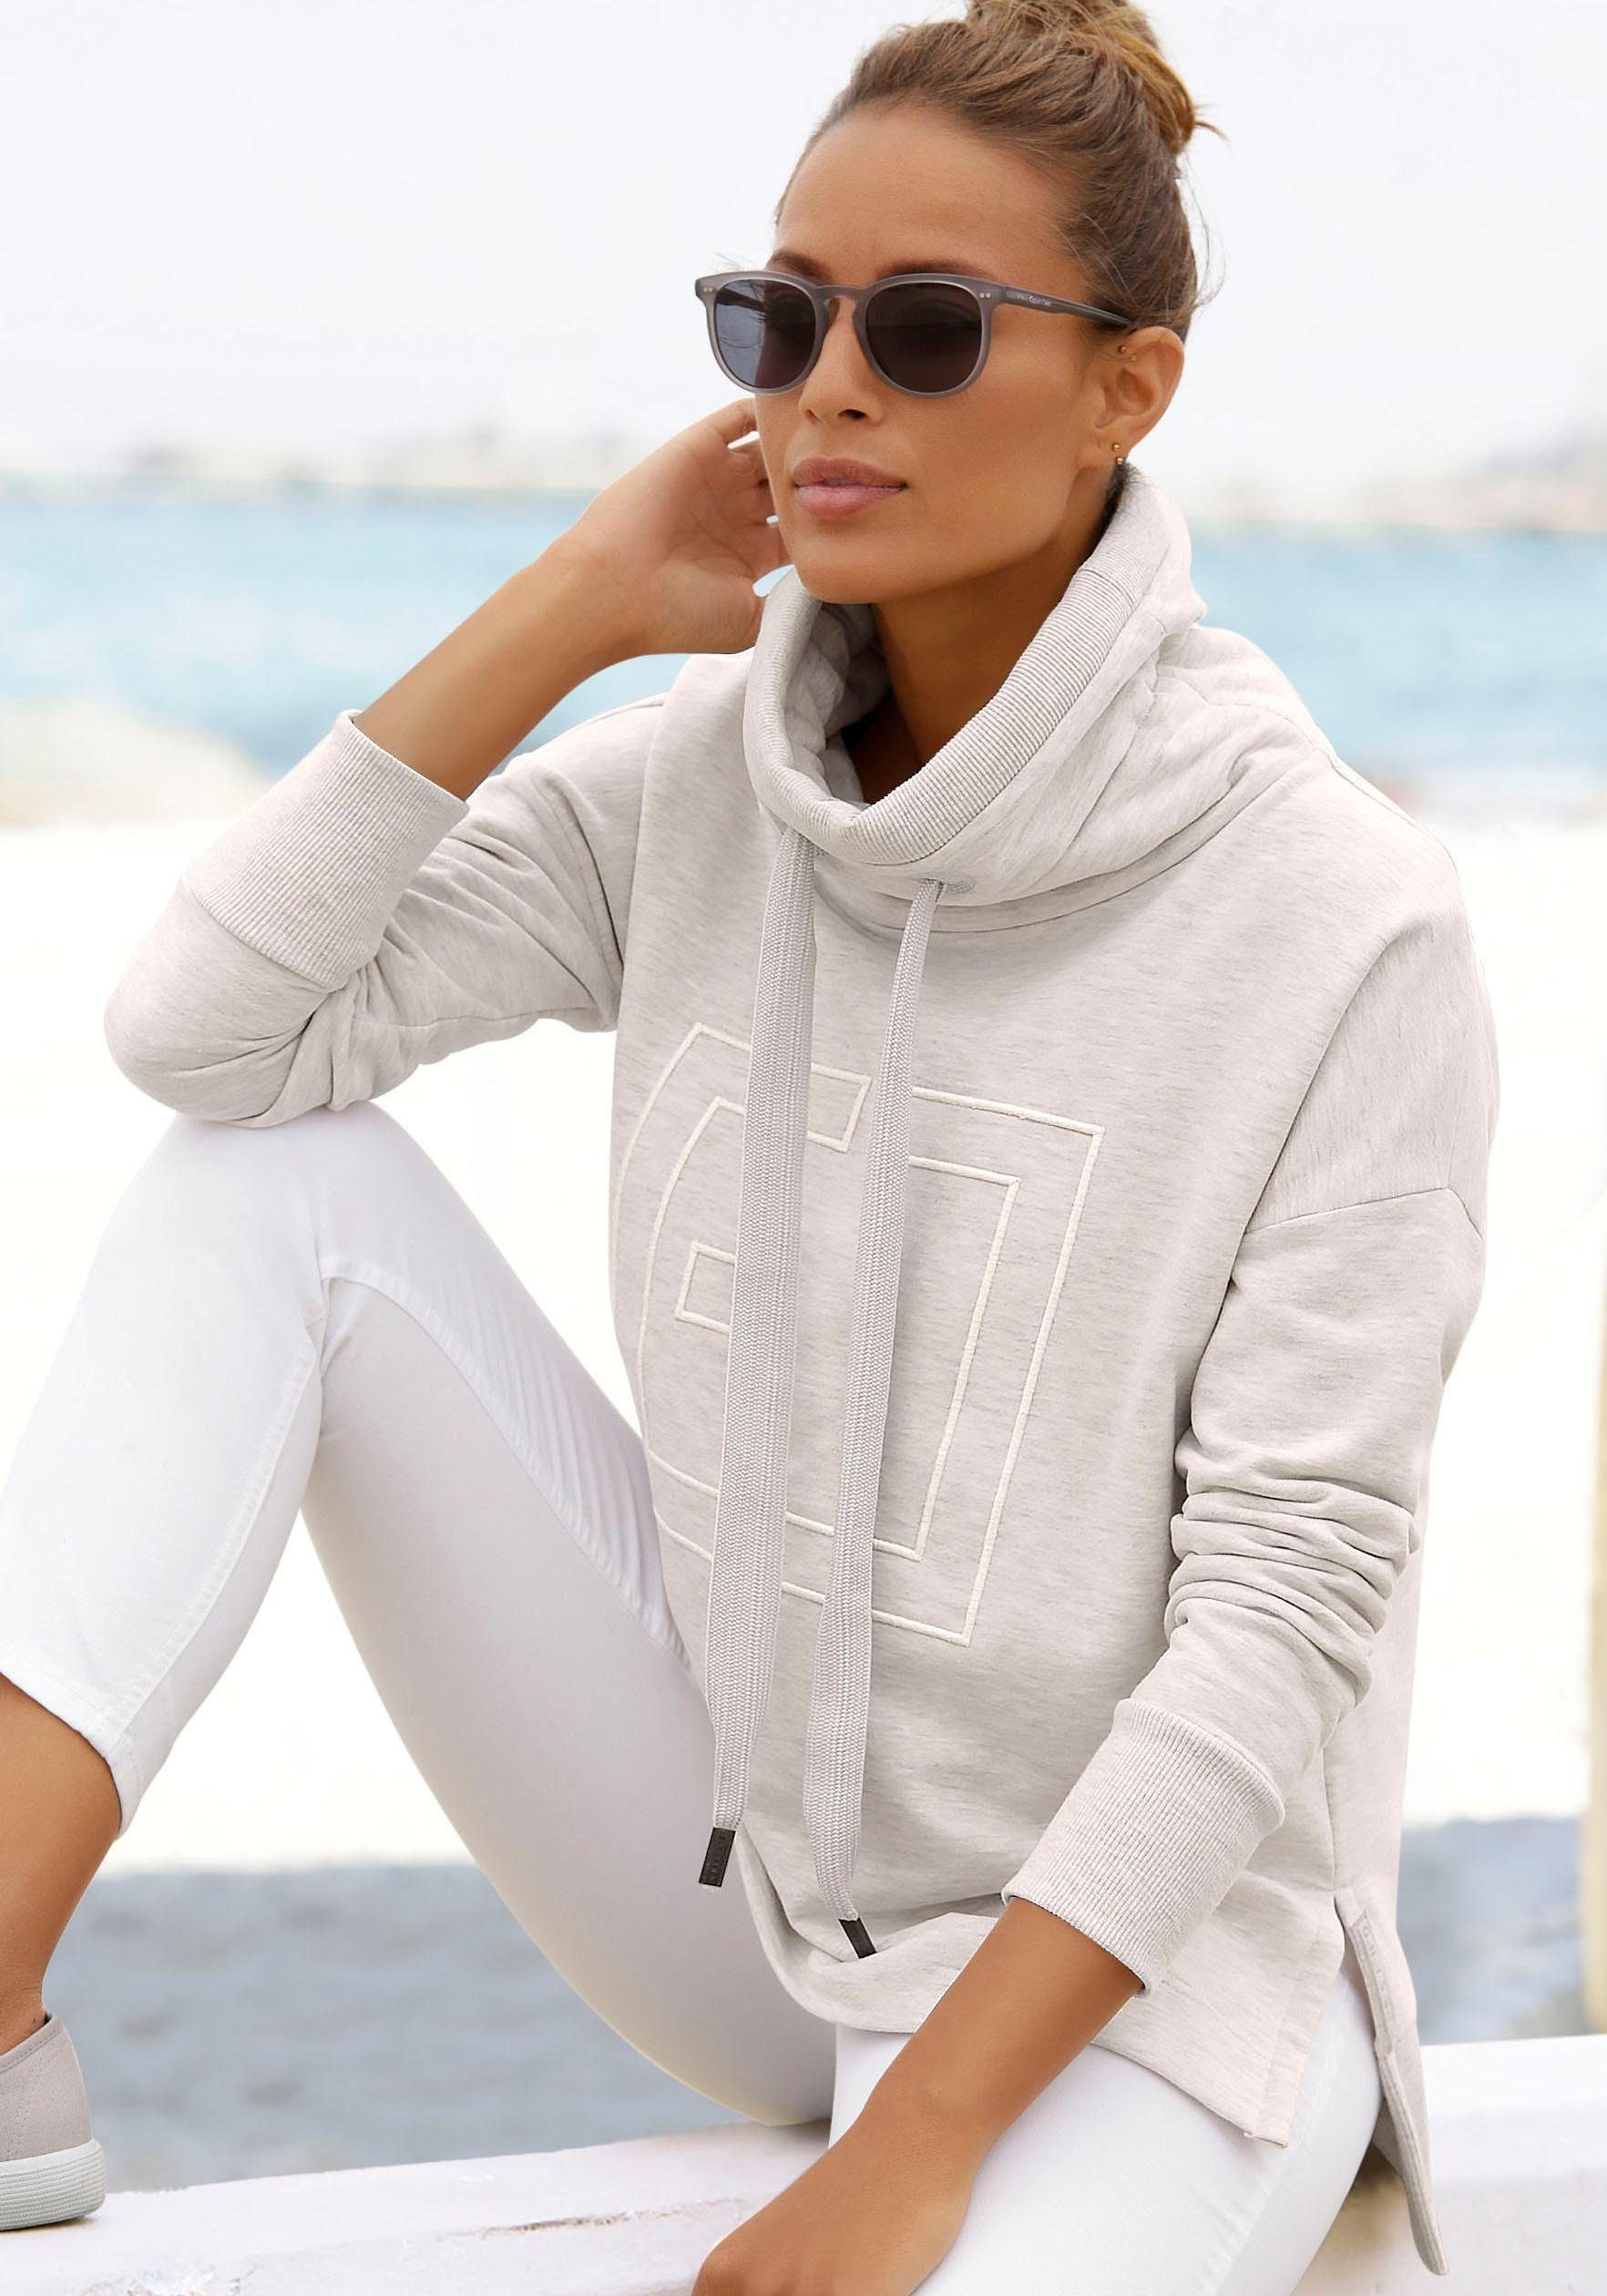 adidas Originals Damen Sweatshirts online kaufen | OTTO